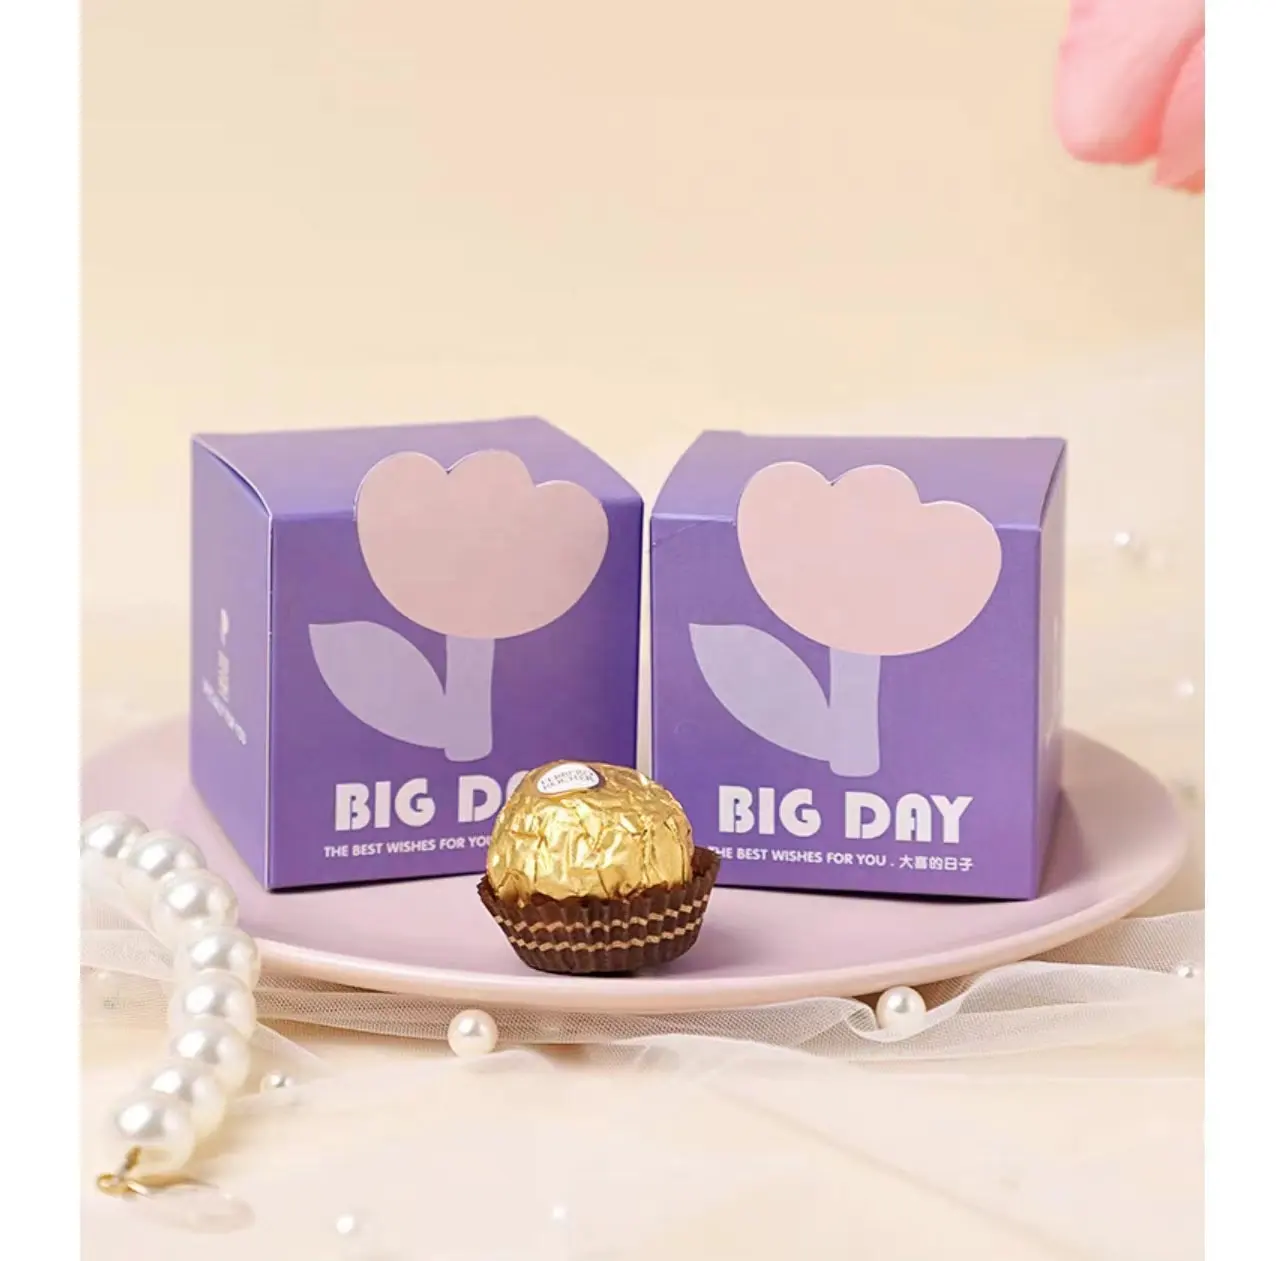 カスタムはリボン付きの甘い包装の結婚式のギフトチョコレートボックスキャンディーボックスを支持します